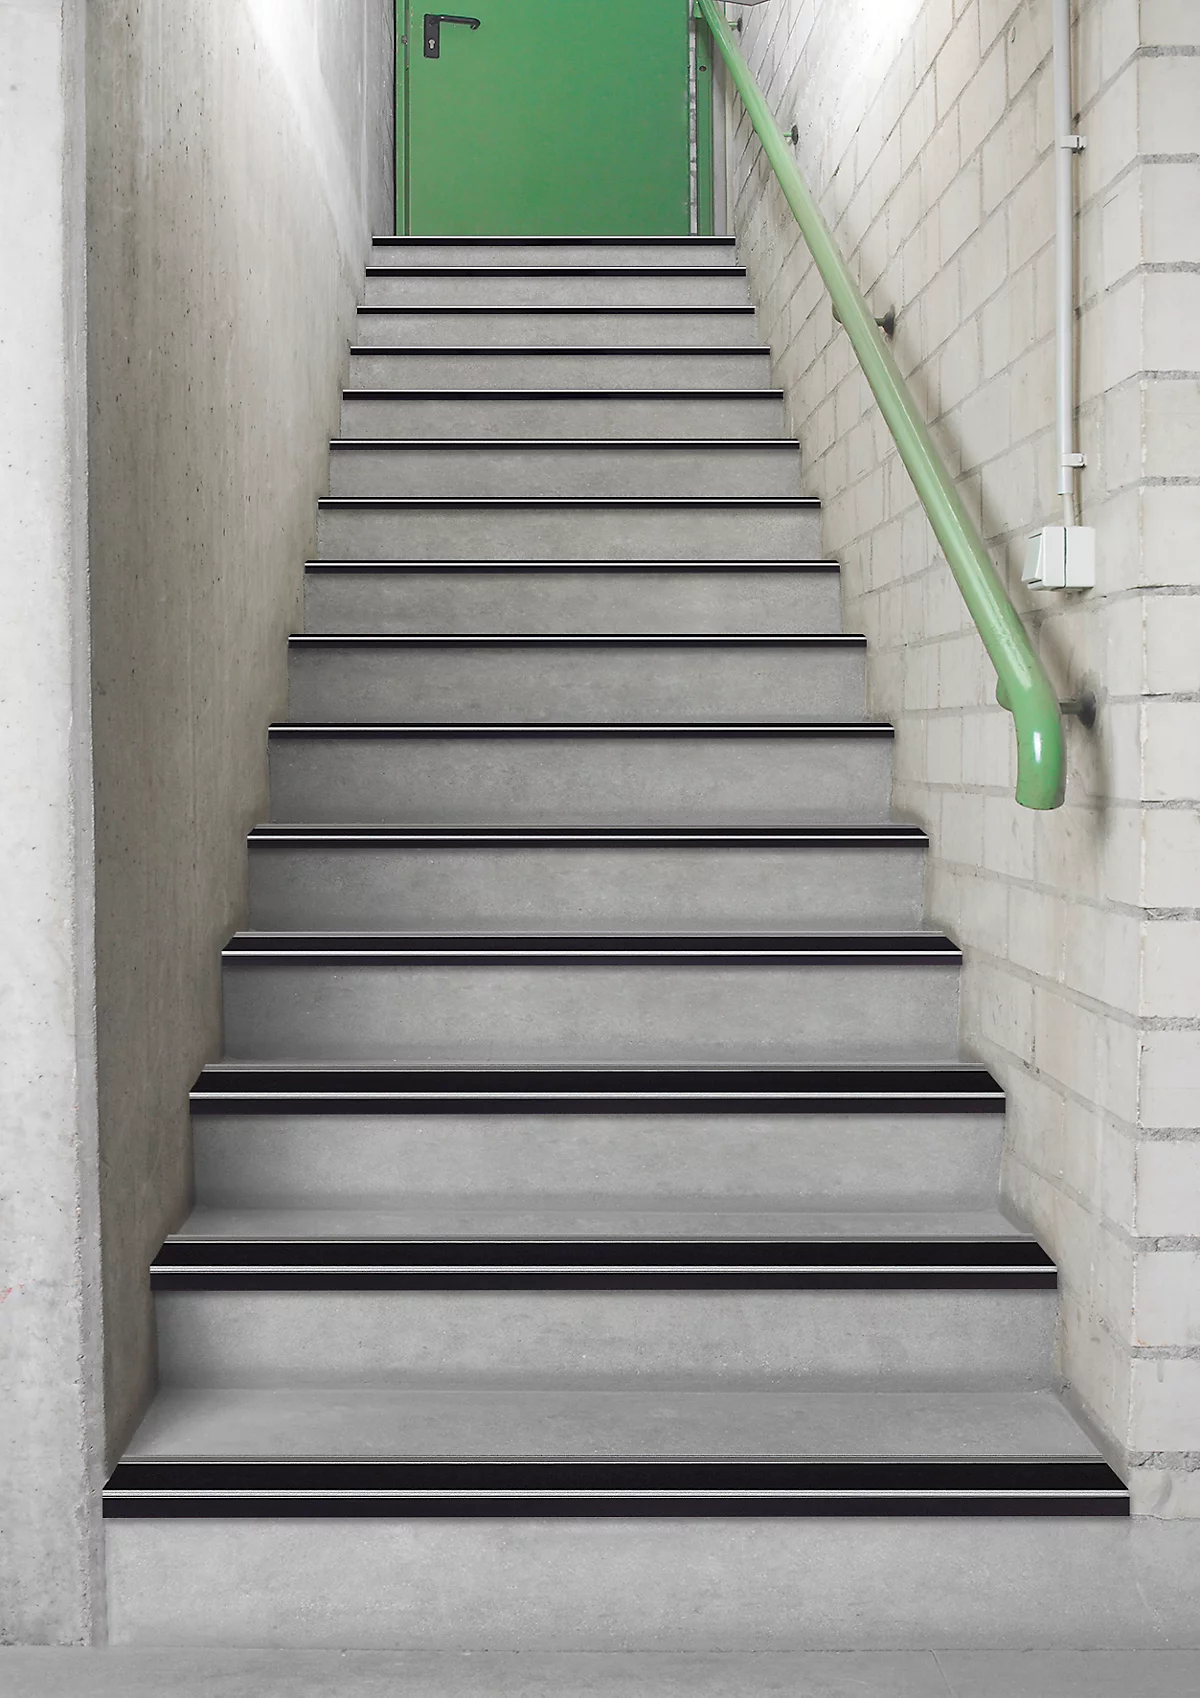 Stufenprofile CleanGrip, Schraubvariante, zur Markierung von Treppenstufen nach DIN 18040, L 1000 x B 60 x H 30 mm, schwarz